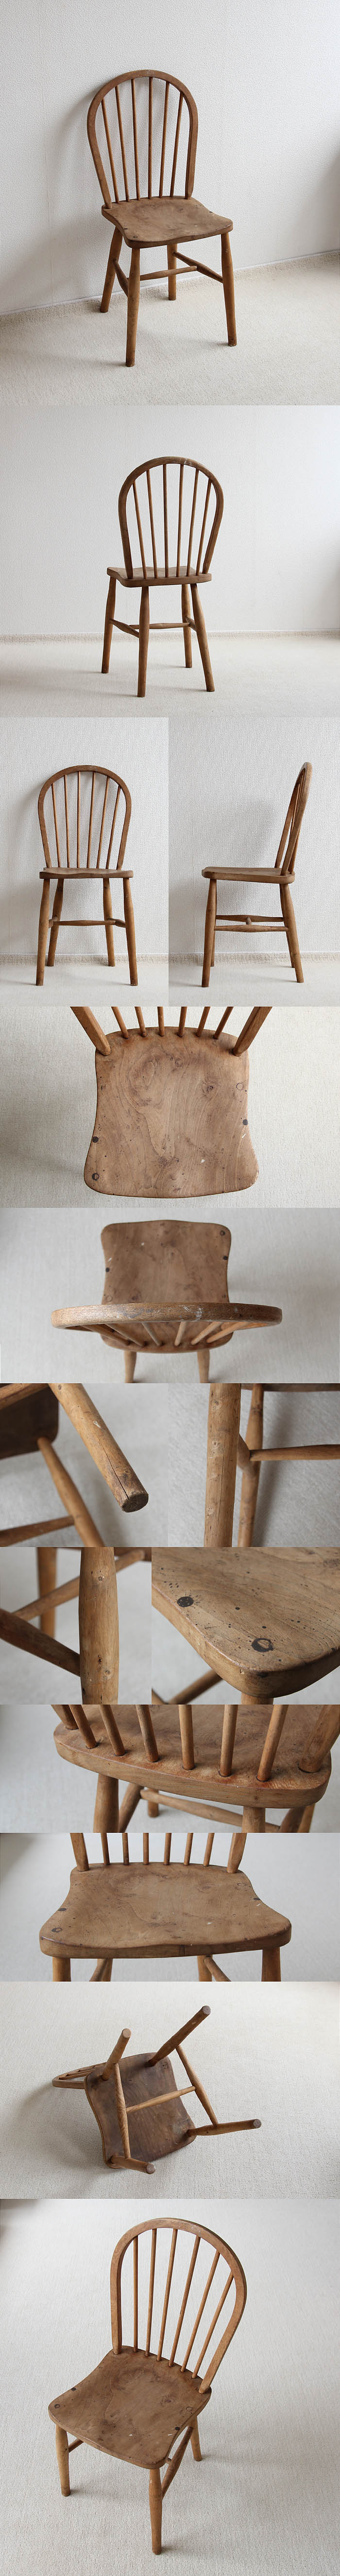 イギリス アンティーク フープバックチェア ウィンザー 木製椅子 ナチュラル 家具 V-245